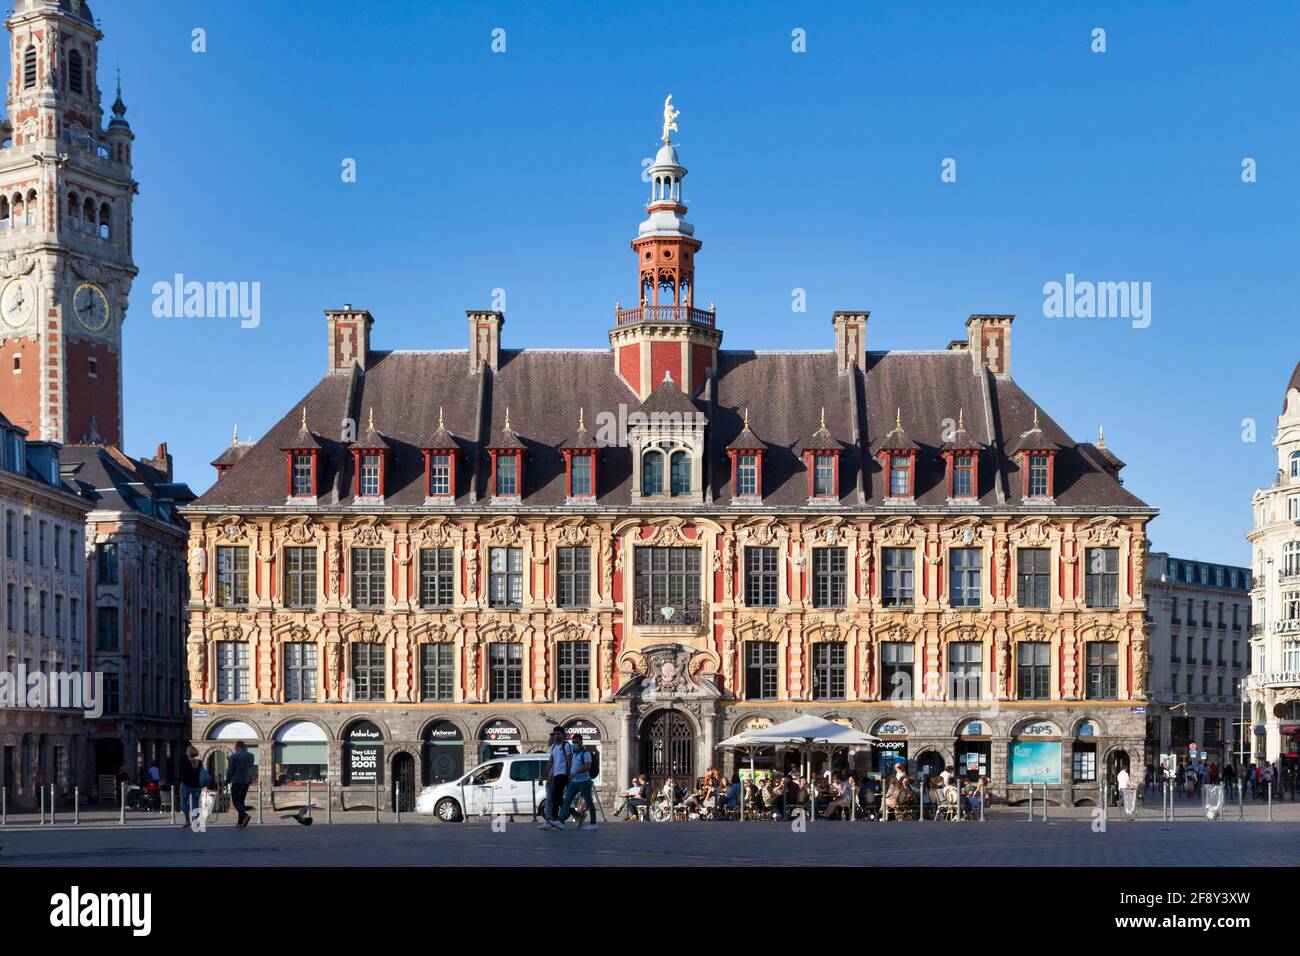 Lille, Frankreich - Juni 22 2020: Die alte Börse (Vieille Bourse) ist das ehemalige Gebäude der Industrie- und Handelskammer von Lille. Stockfoto